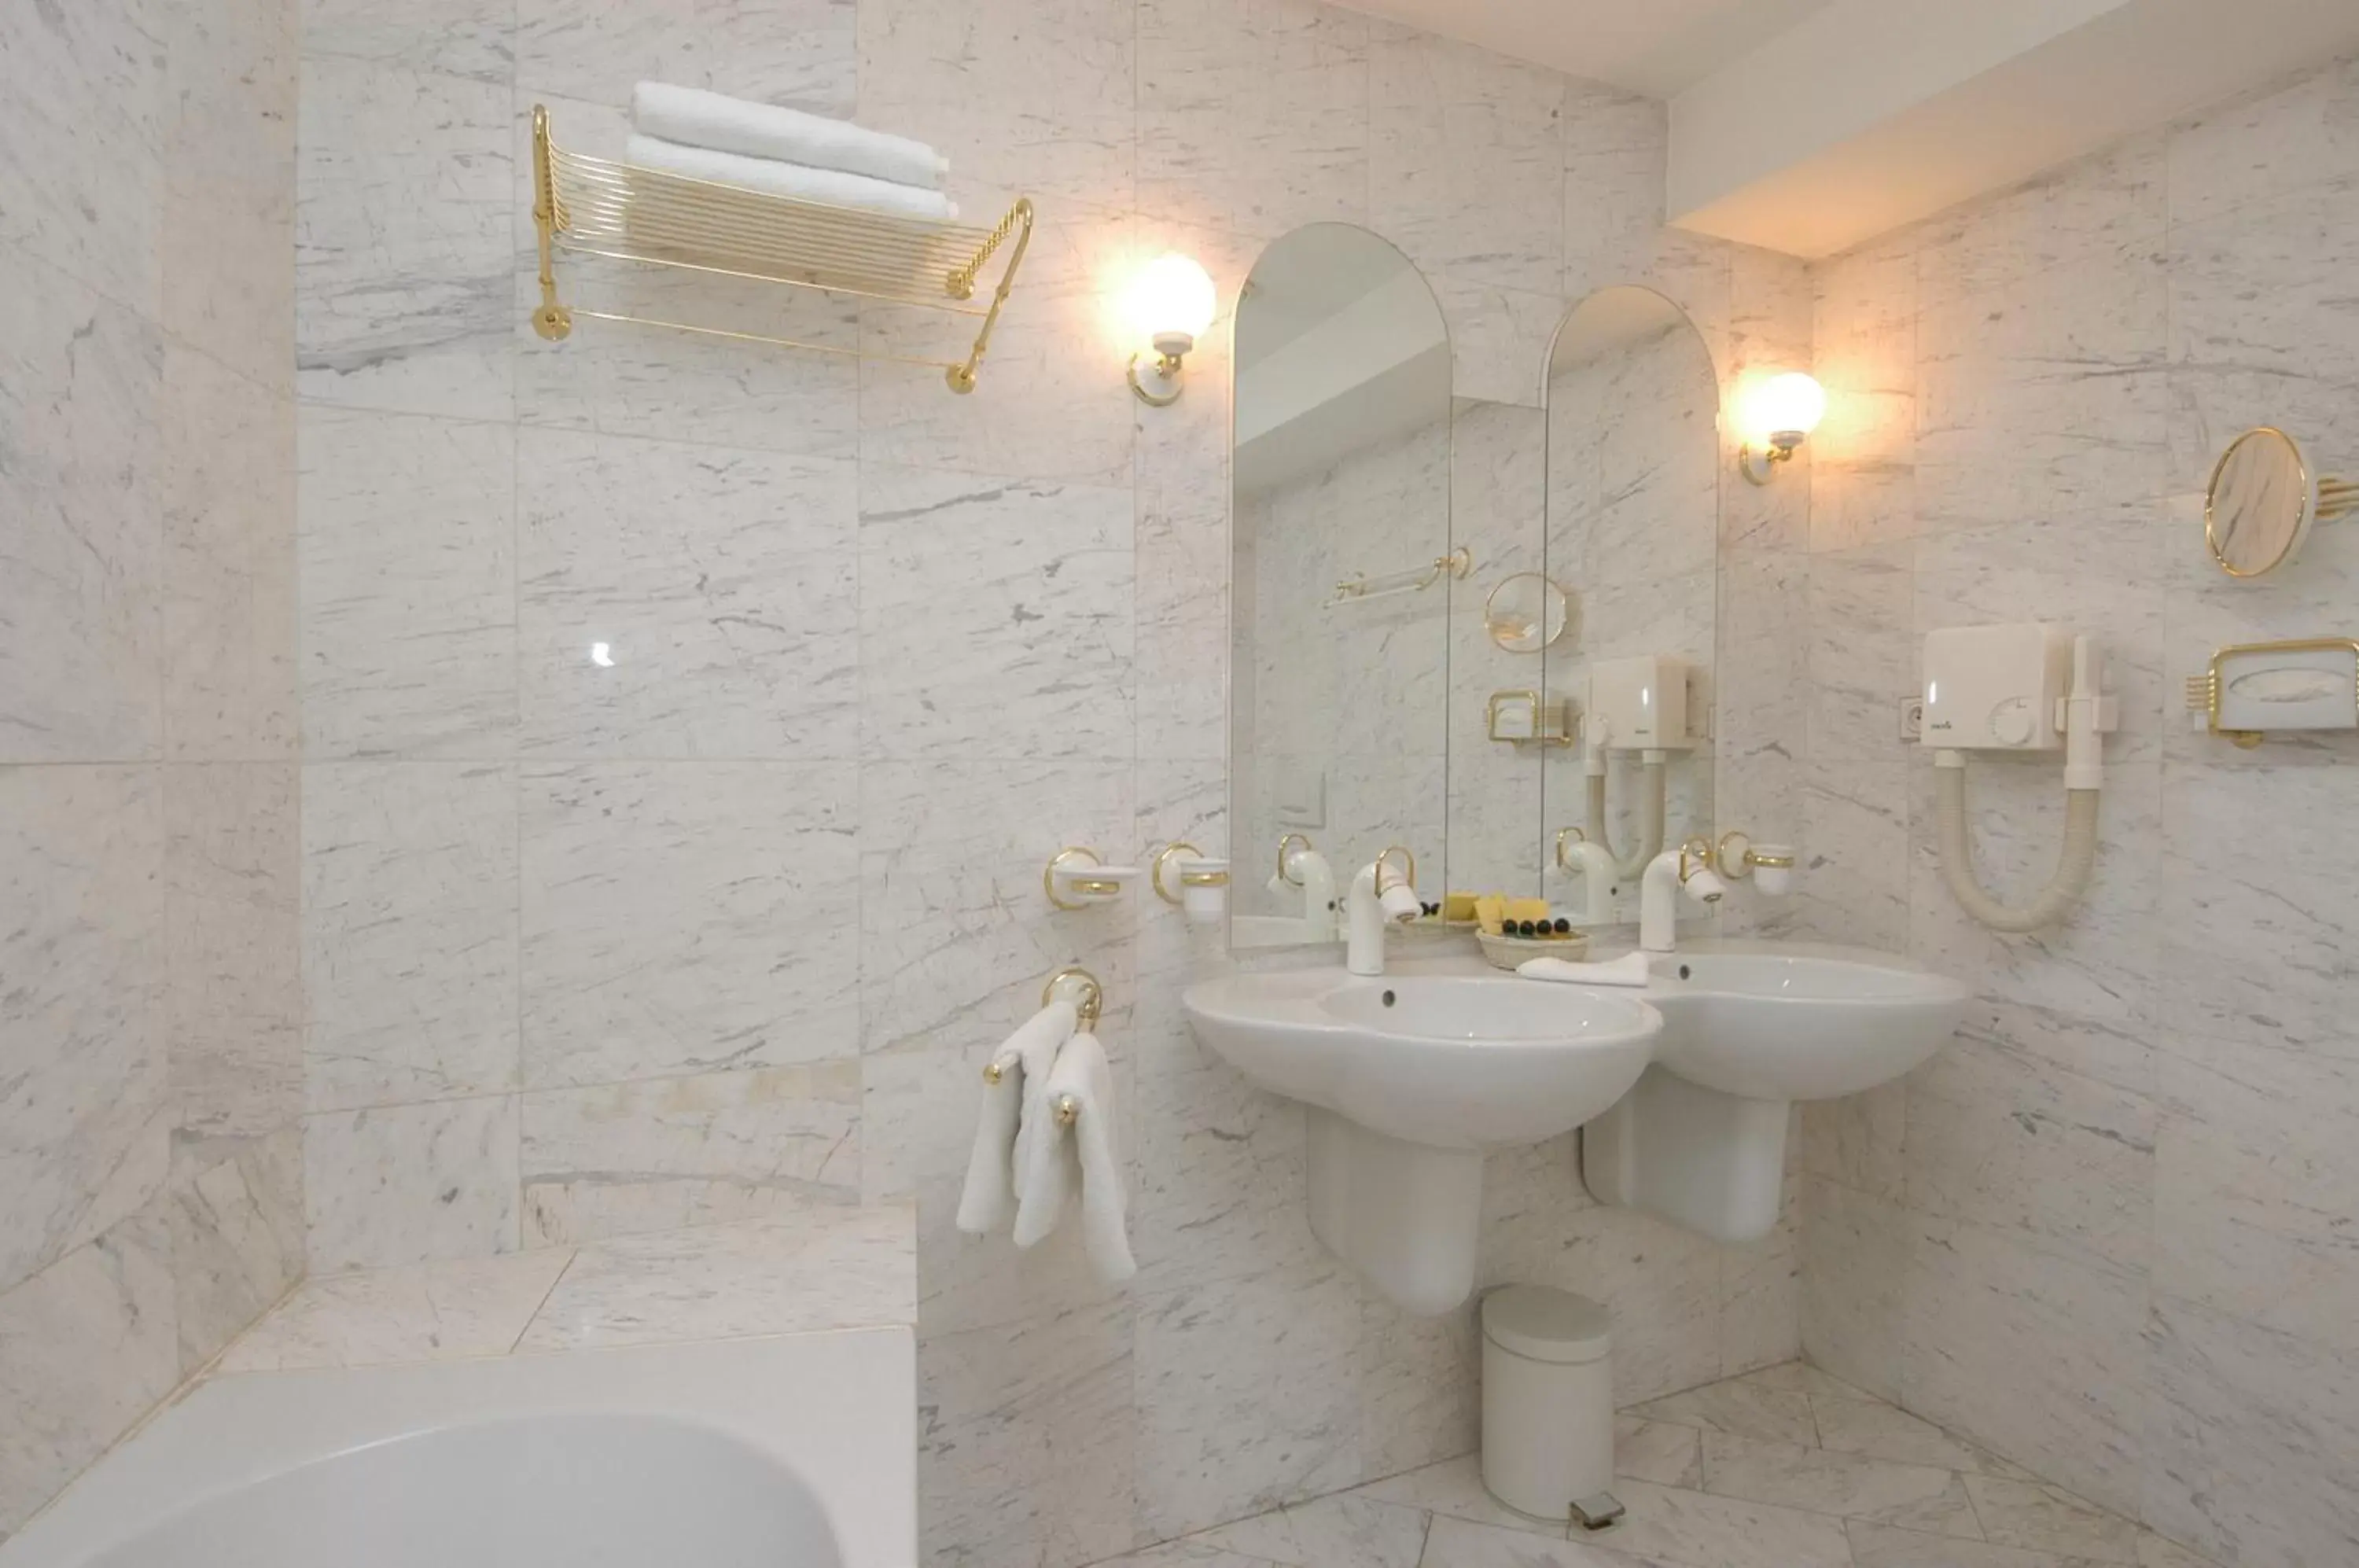 Bathroom in Hotel Dvorak Cesky Krumlov